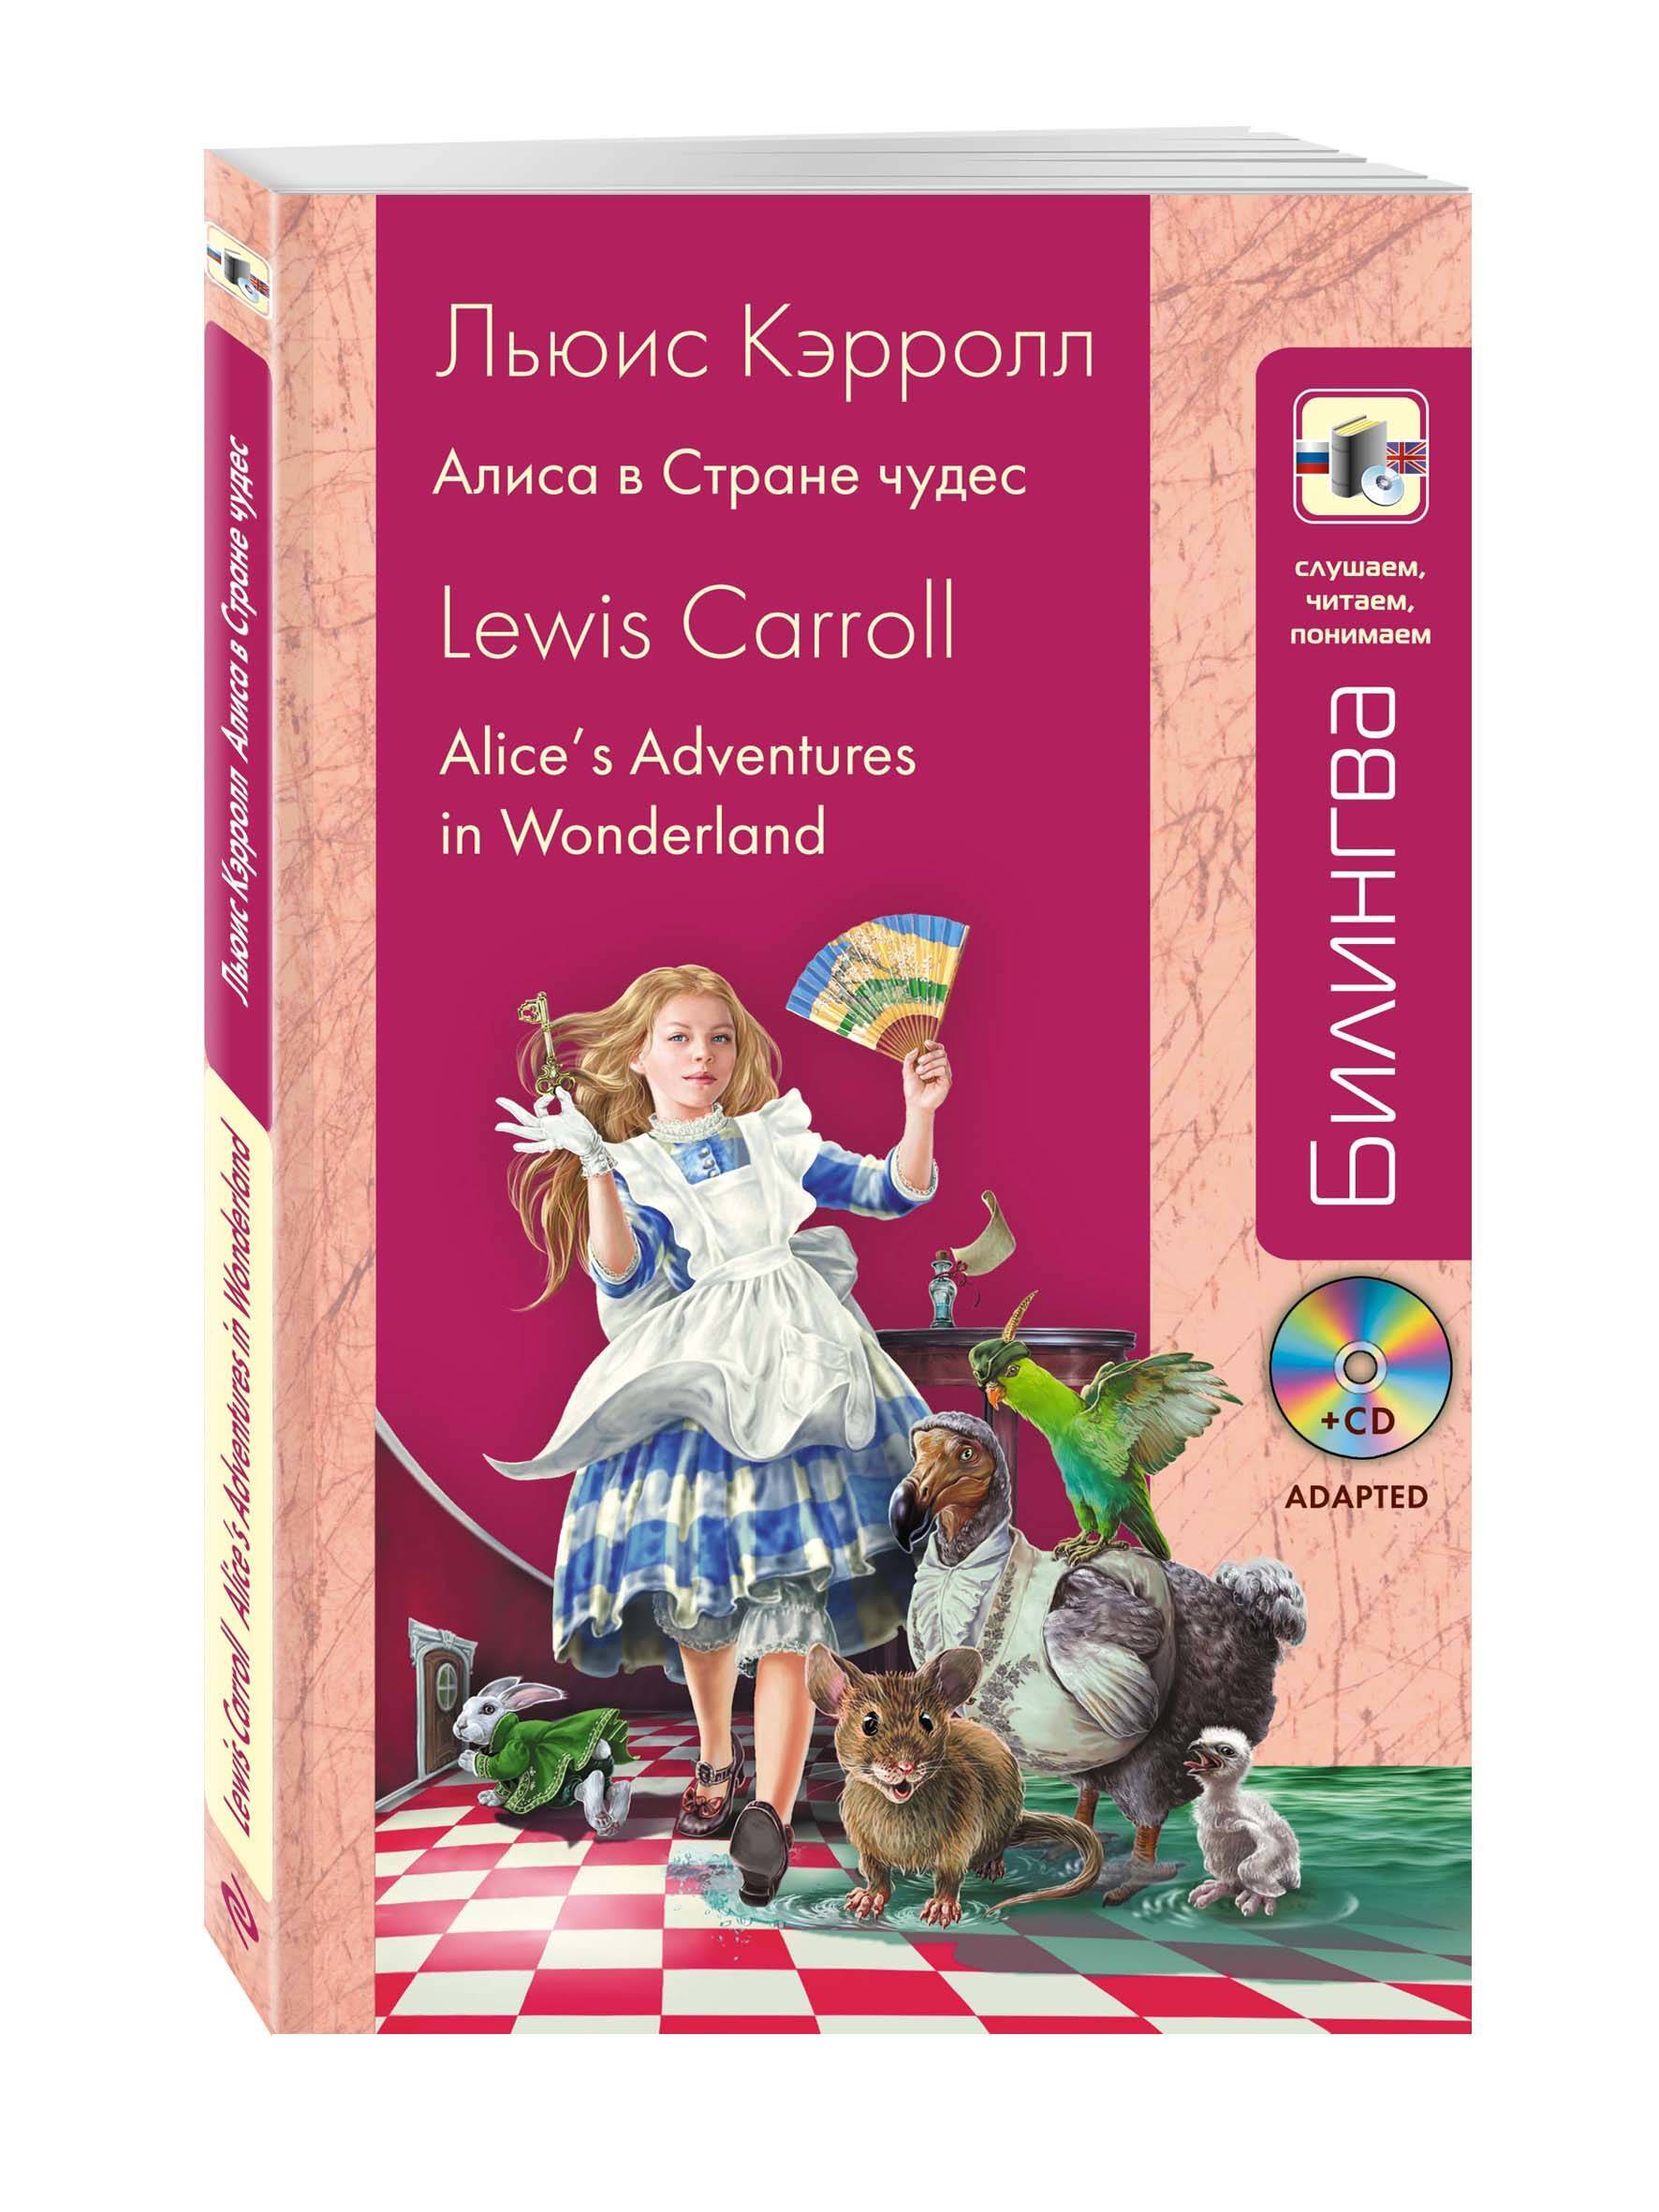 Алиса в стране чудес читать 1. Алиса в стране чудес из книги Льюиса Кэрролла. Алиса в стране чудес Карол на английском. Алиса. «Алиса в стране чудес» и «Алиса в Зазеркалье» Льюис Кэрролл. Lewis Carroll Алиса в стране чудес.